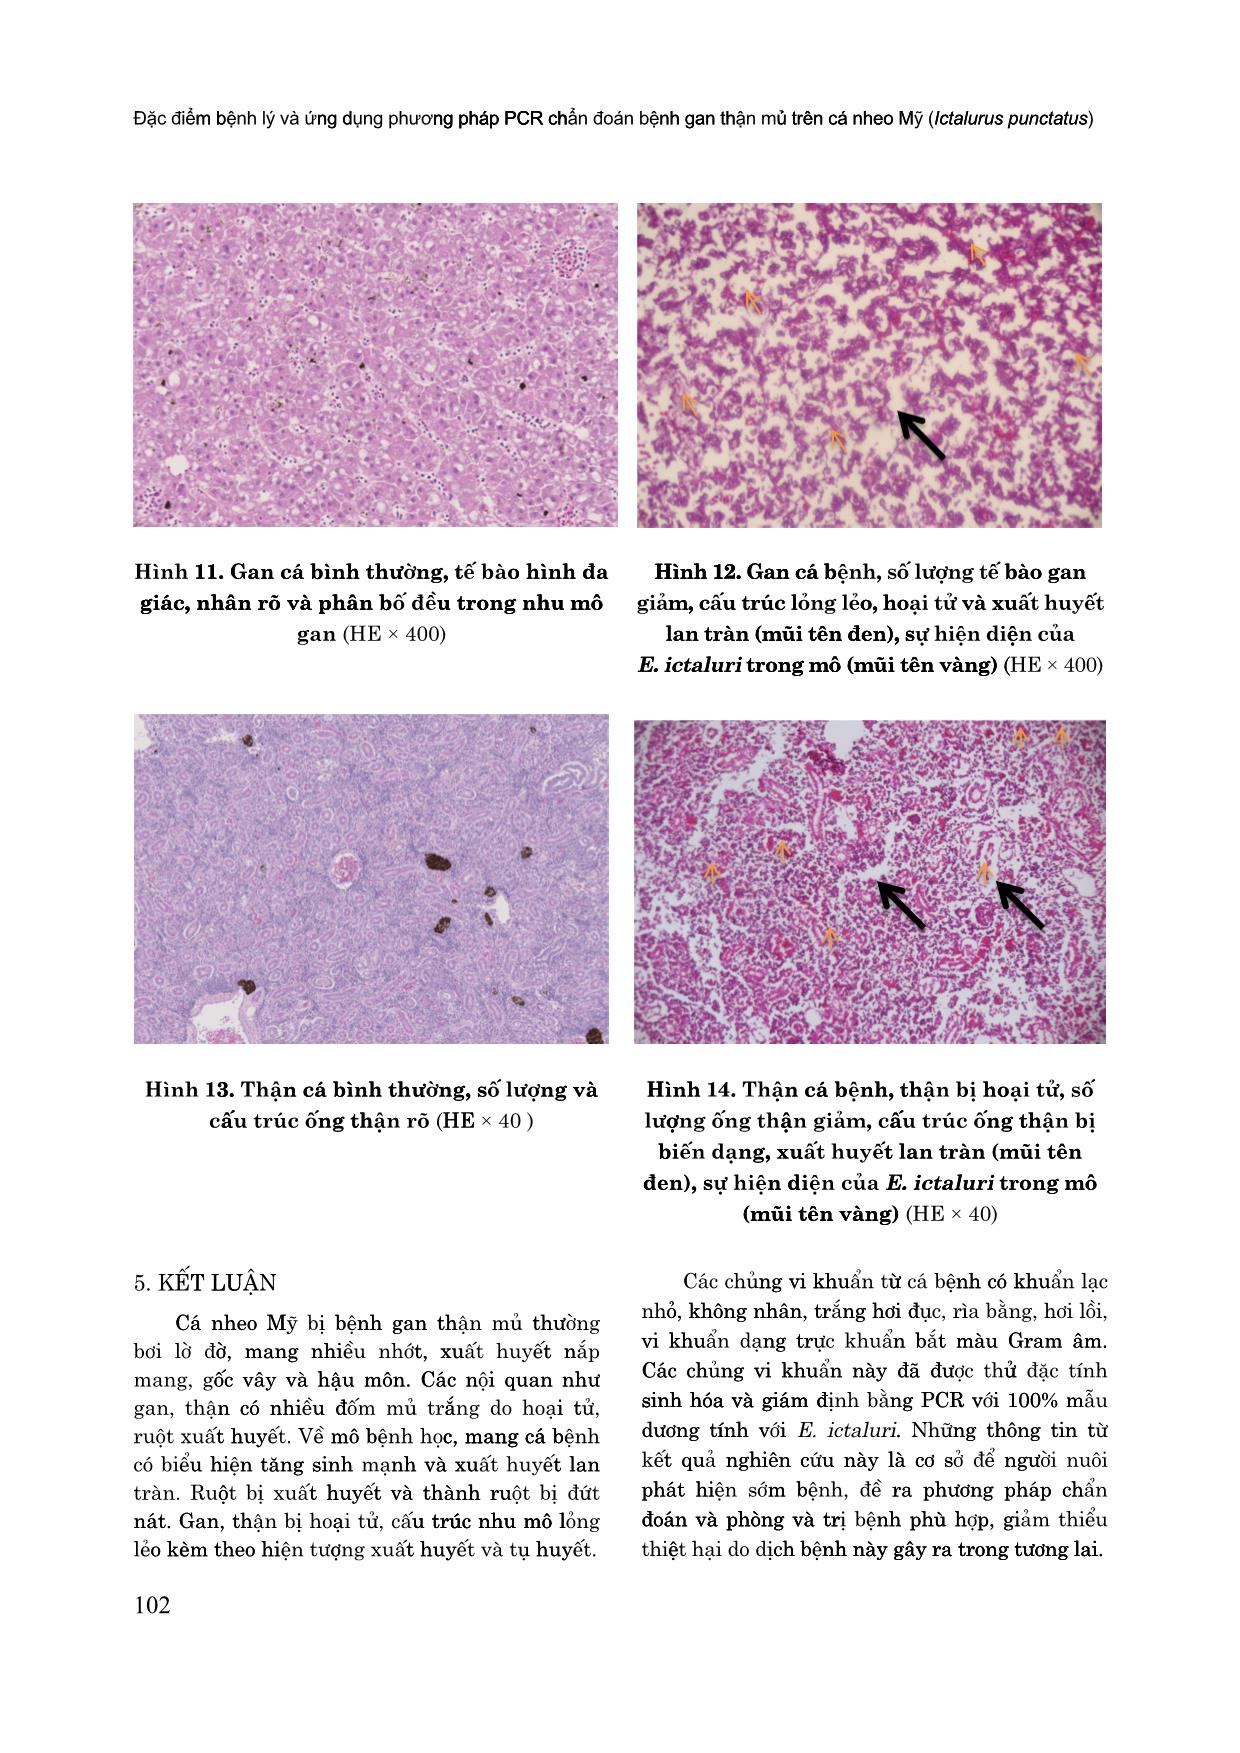 Đặc điểm bệnh lý và ứng dụng phương pháp PCR chẩn đoán bệnh gan thận mủ trên cá nheo Mỹ (Ictalurus punctatus) trang 9